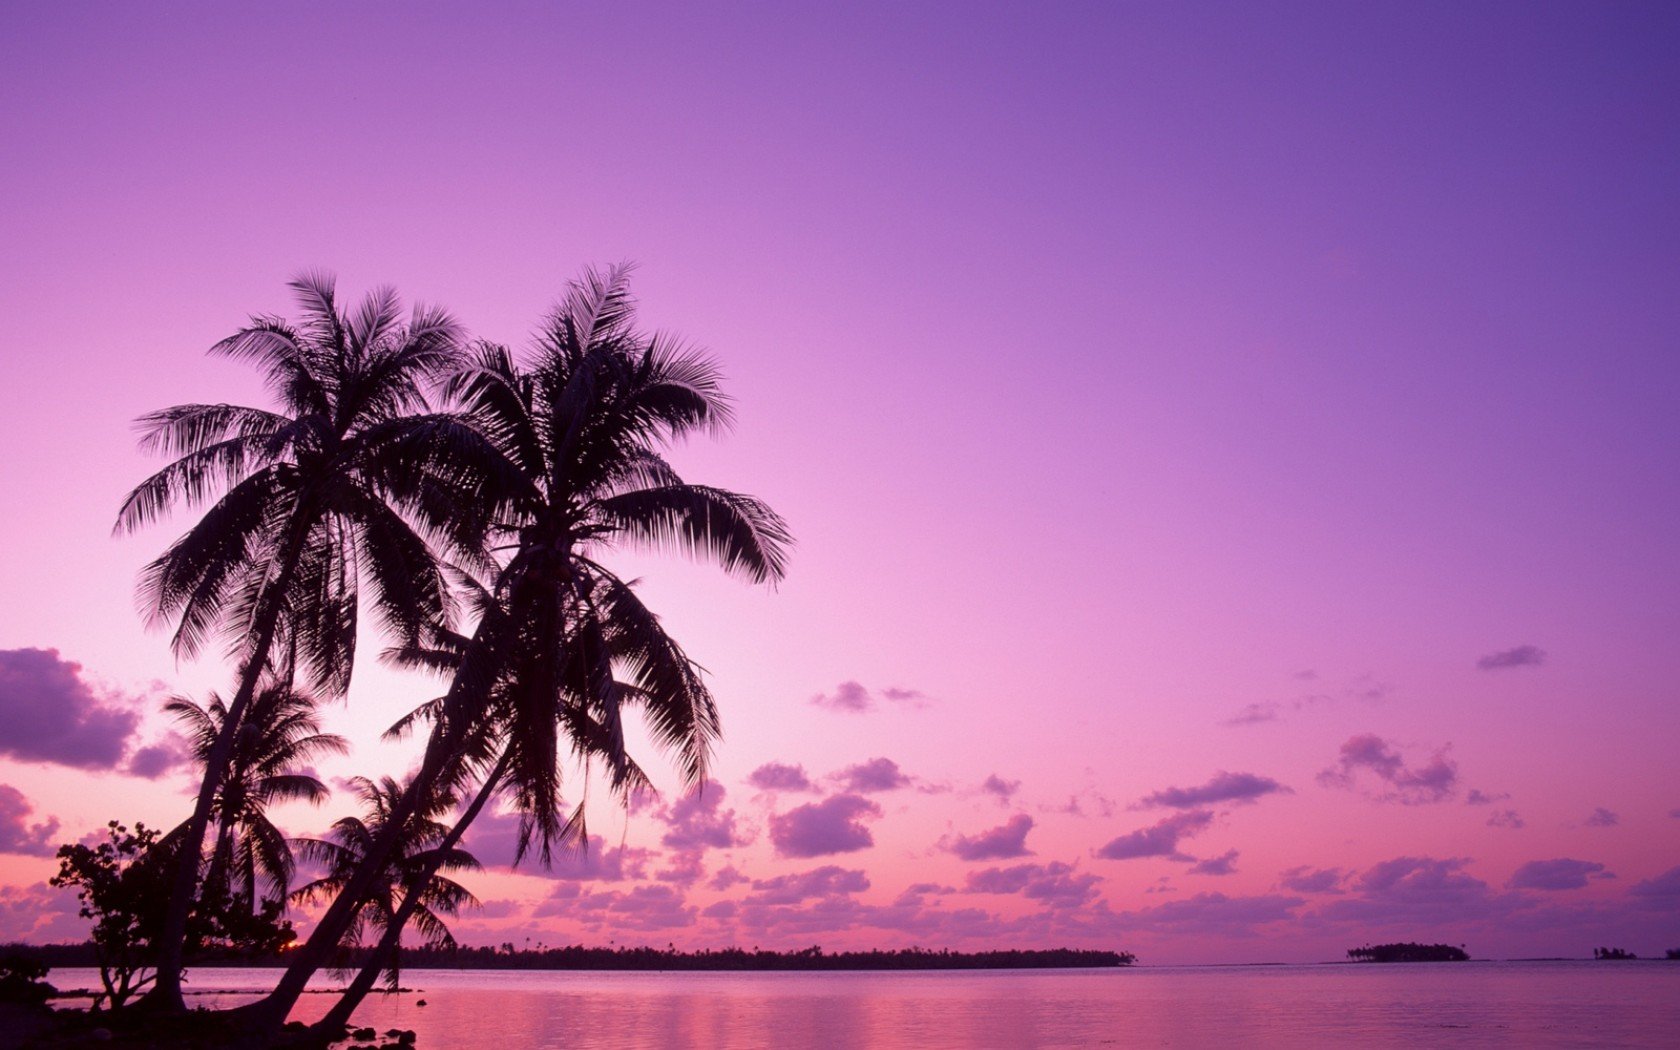 Ảnh nền biển màu hồng cho laptop: Tưởng tượng mình đang đứng trước bãi biển huyền diệu với những con sóng âm thầm và ánh trăng lãng mạn, tất cả thể hiện đẹp lung linh trên máy tính của bạn thông qua những mẫu ảnh nền biển màu hồng tuyệt vời này. Bạn sẽ cảm thấy thật sự thư giãn và thoải mái khi dùng máy tính.